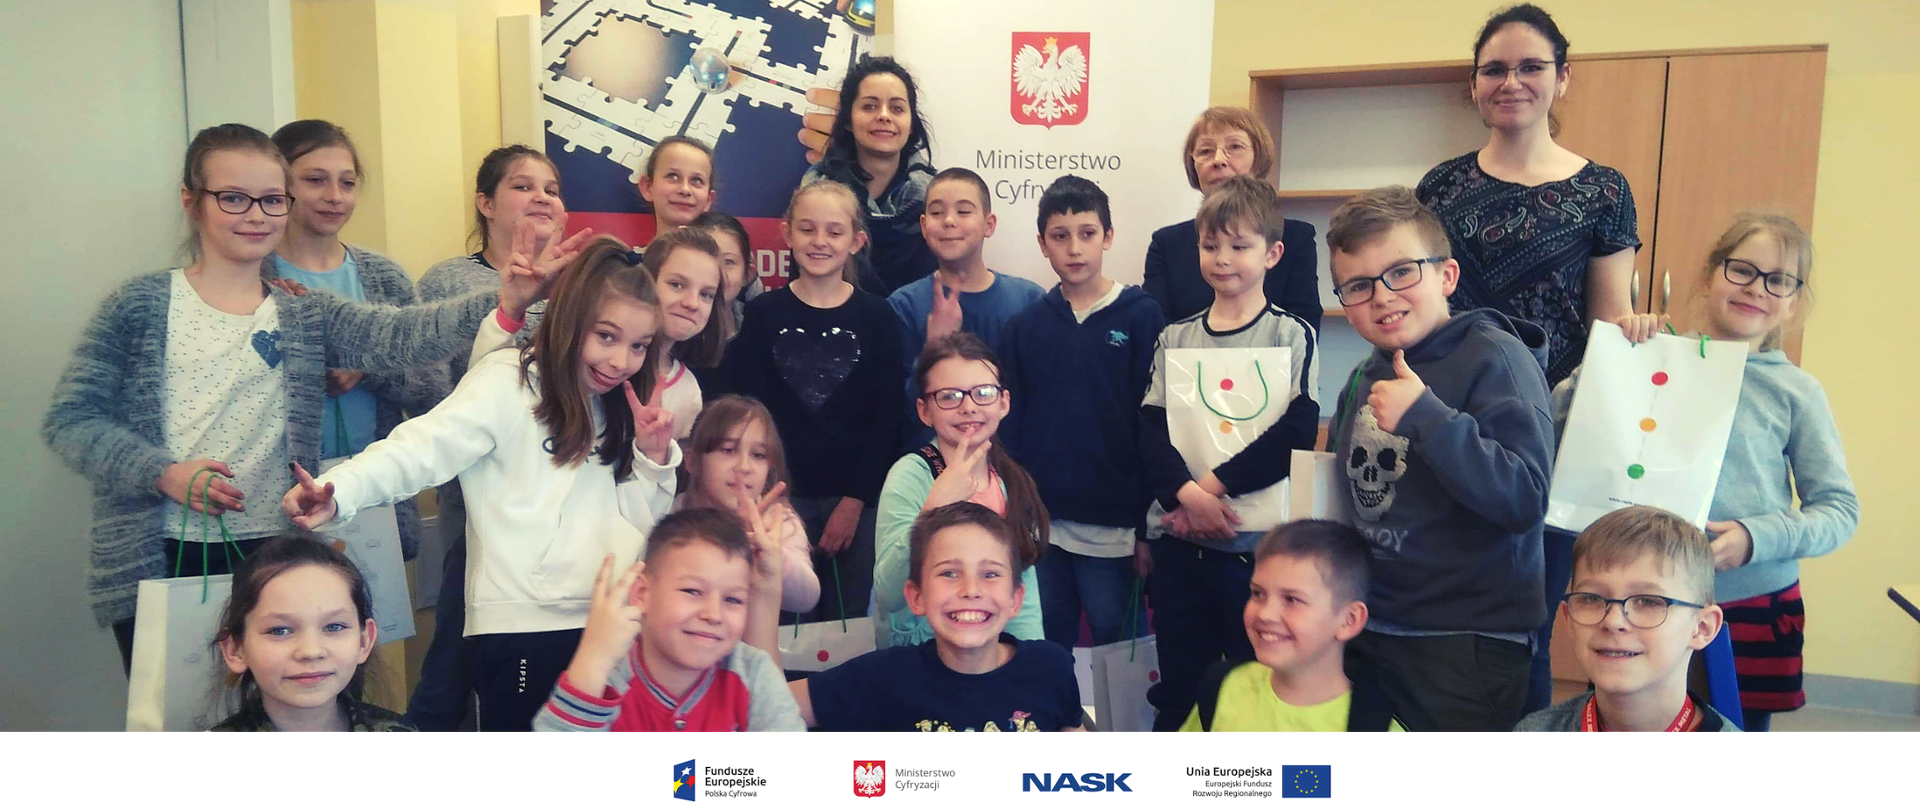 Na zdjęciu widać grupę dzieci w szkolnej klasie. Na dole zdjęcia umieszczone są logotypy: Fundusze Europejskie. Polska Cyfrowa, Ministerstwo Cyfryzacji, NASK oraz Unia Europejska. Europejski Fundusz Rozwoju Regionalnego. 